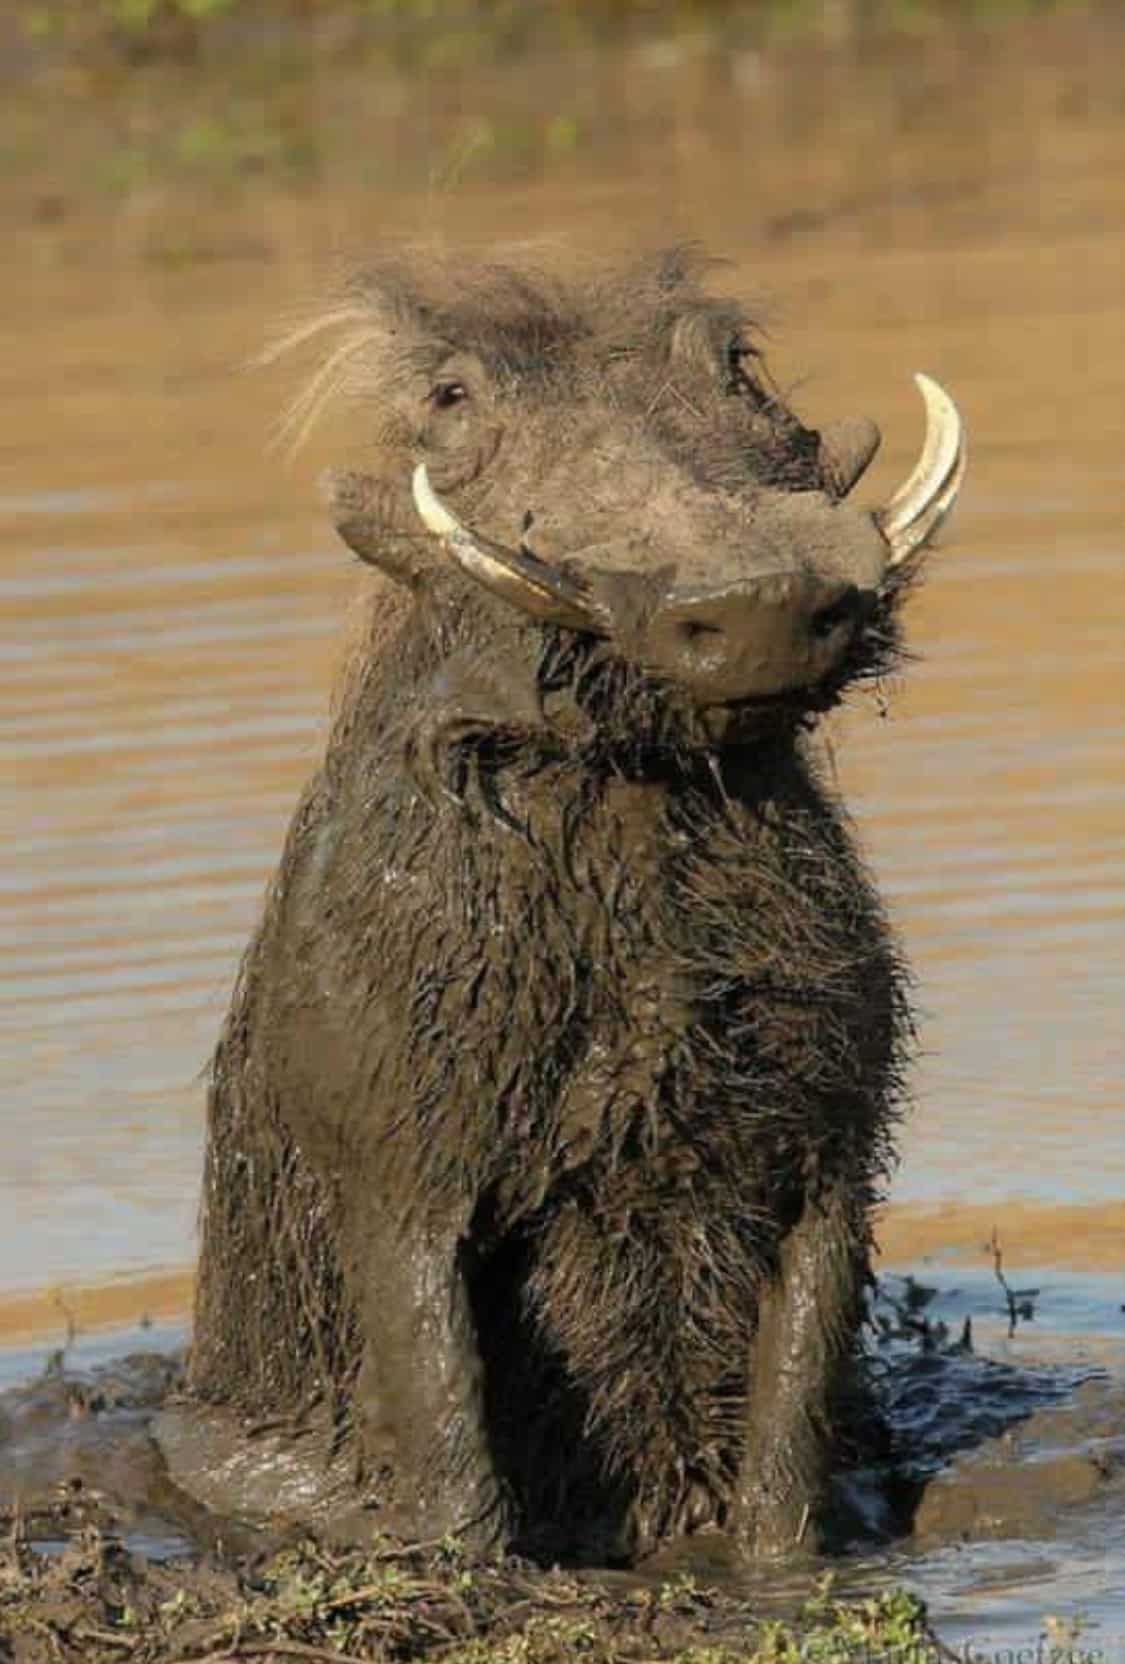 Wharthog in the mud!